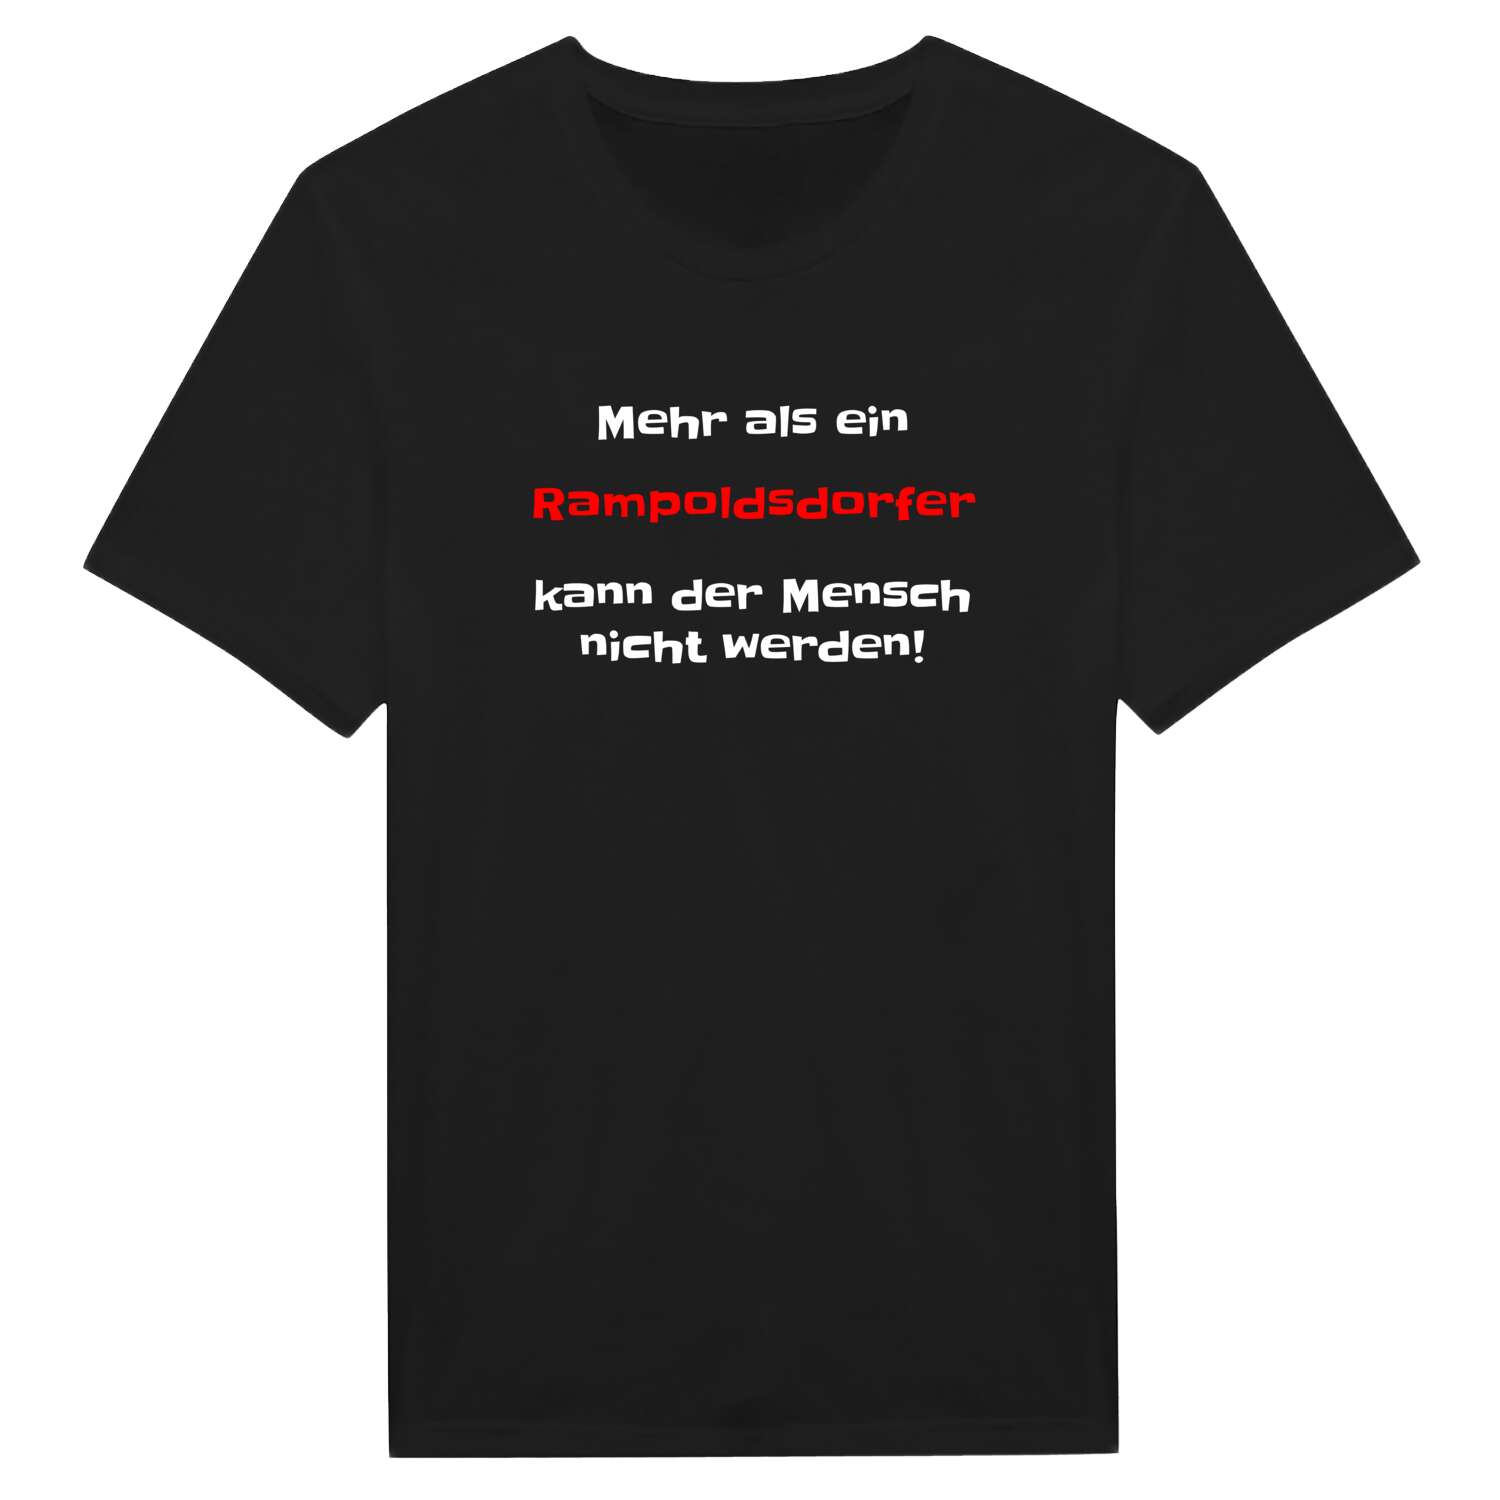 Rampoldsdorf T-Shirt »Mehr als ein«